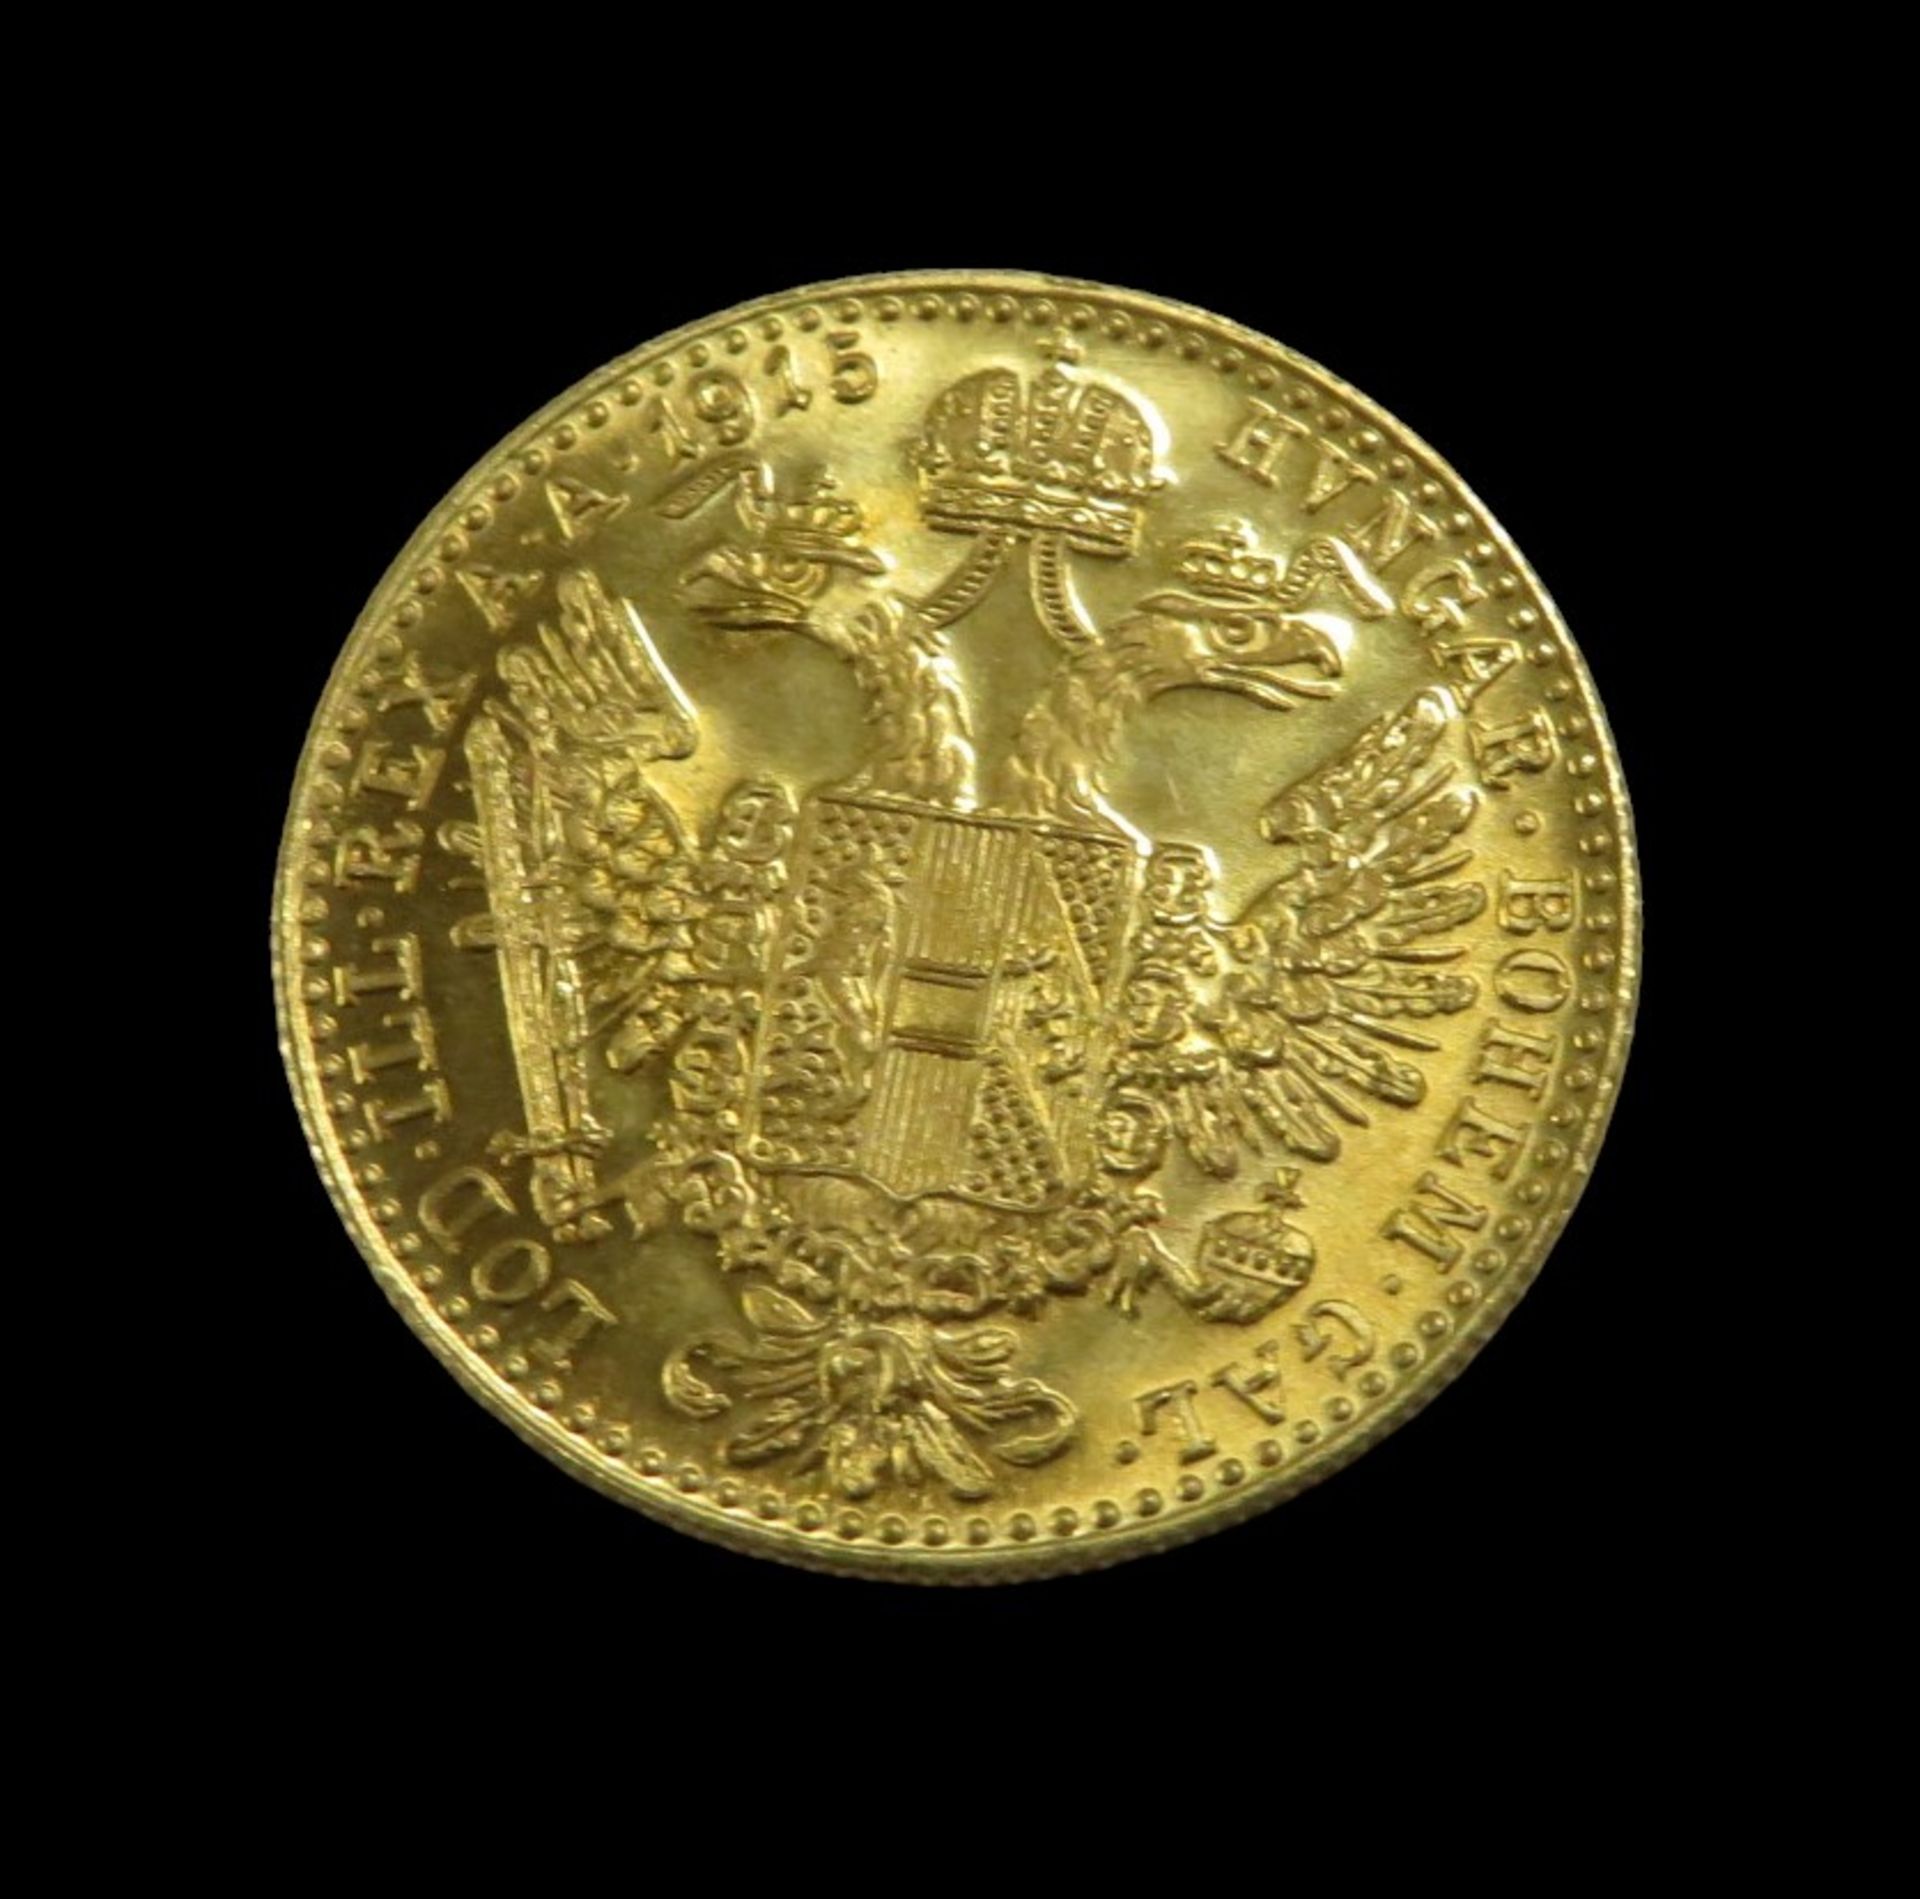 Goldmünze, Österreich, 1 Dukat, Kaiser Franz Joseph I, 1915, Gold 986/000, 3,5 g, d 1,97 cm. - Image 2 of 2